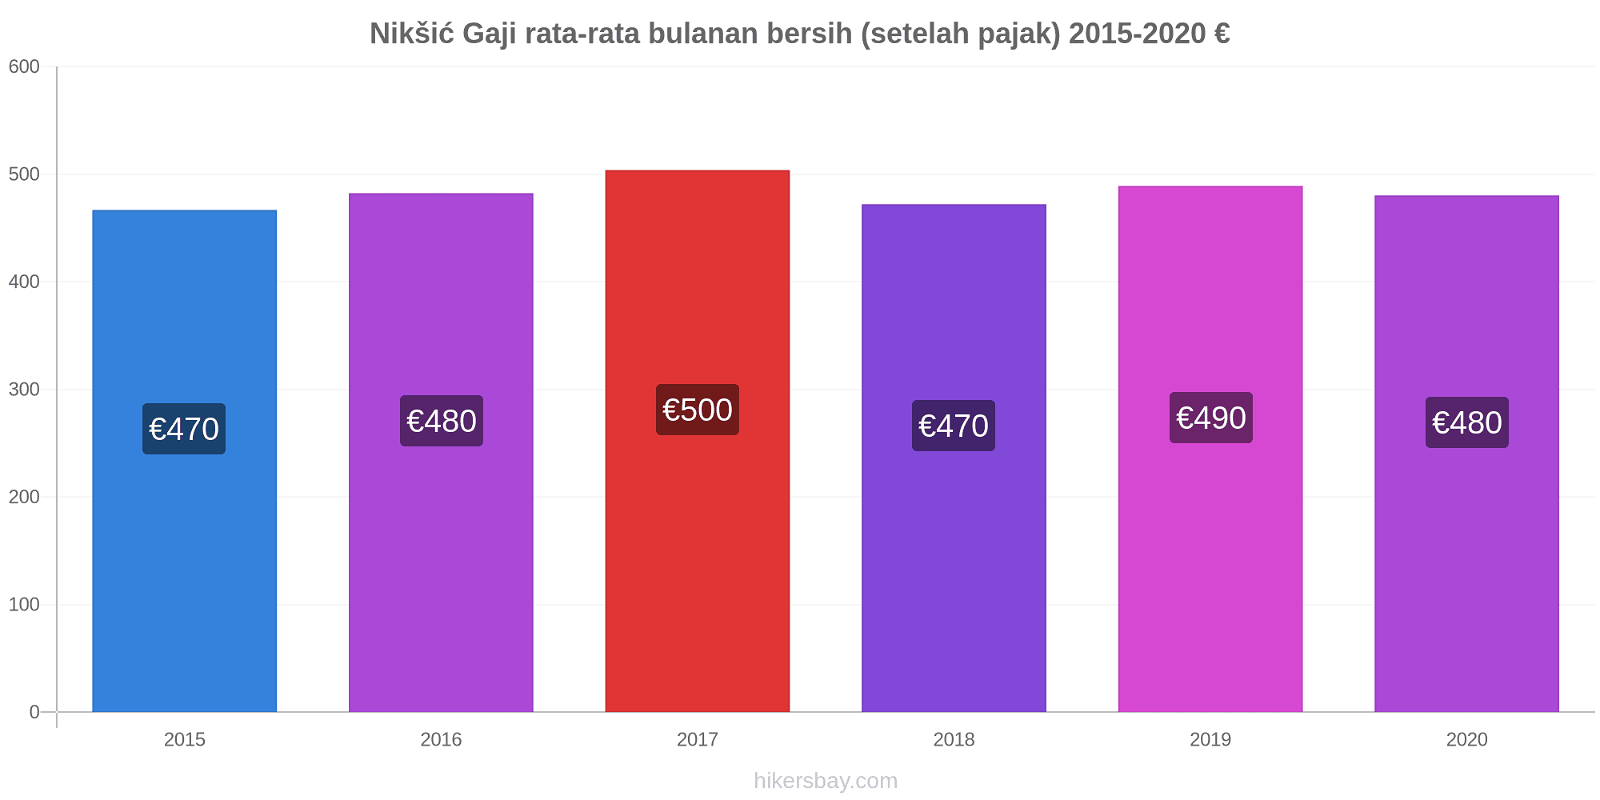 Nikšić perubahan harga Gaji rata-rata bulanan bersih (setelah pajak) hikersbay.com